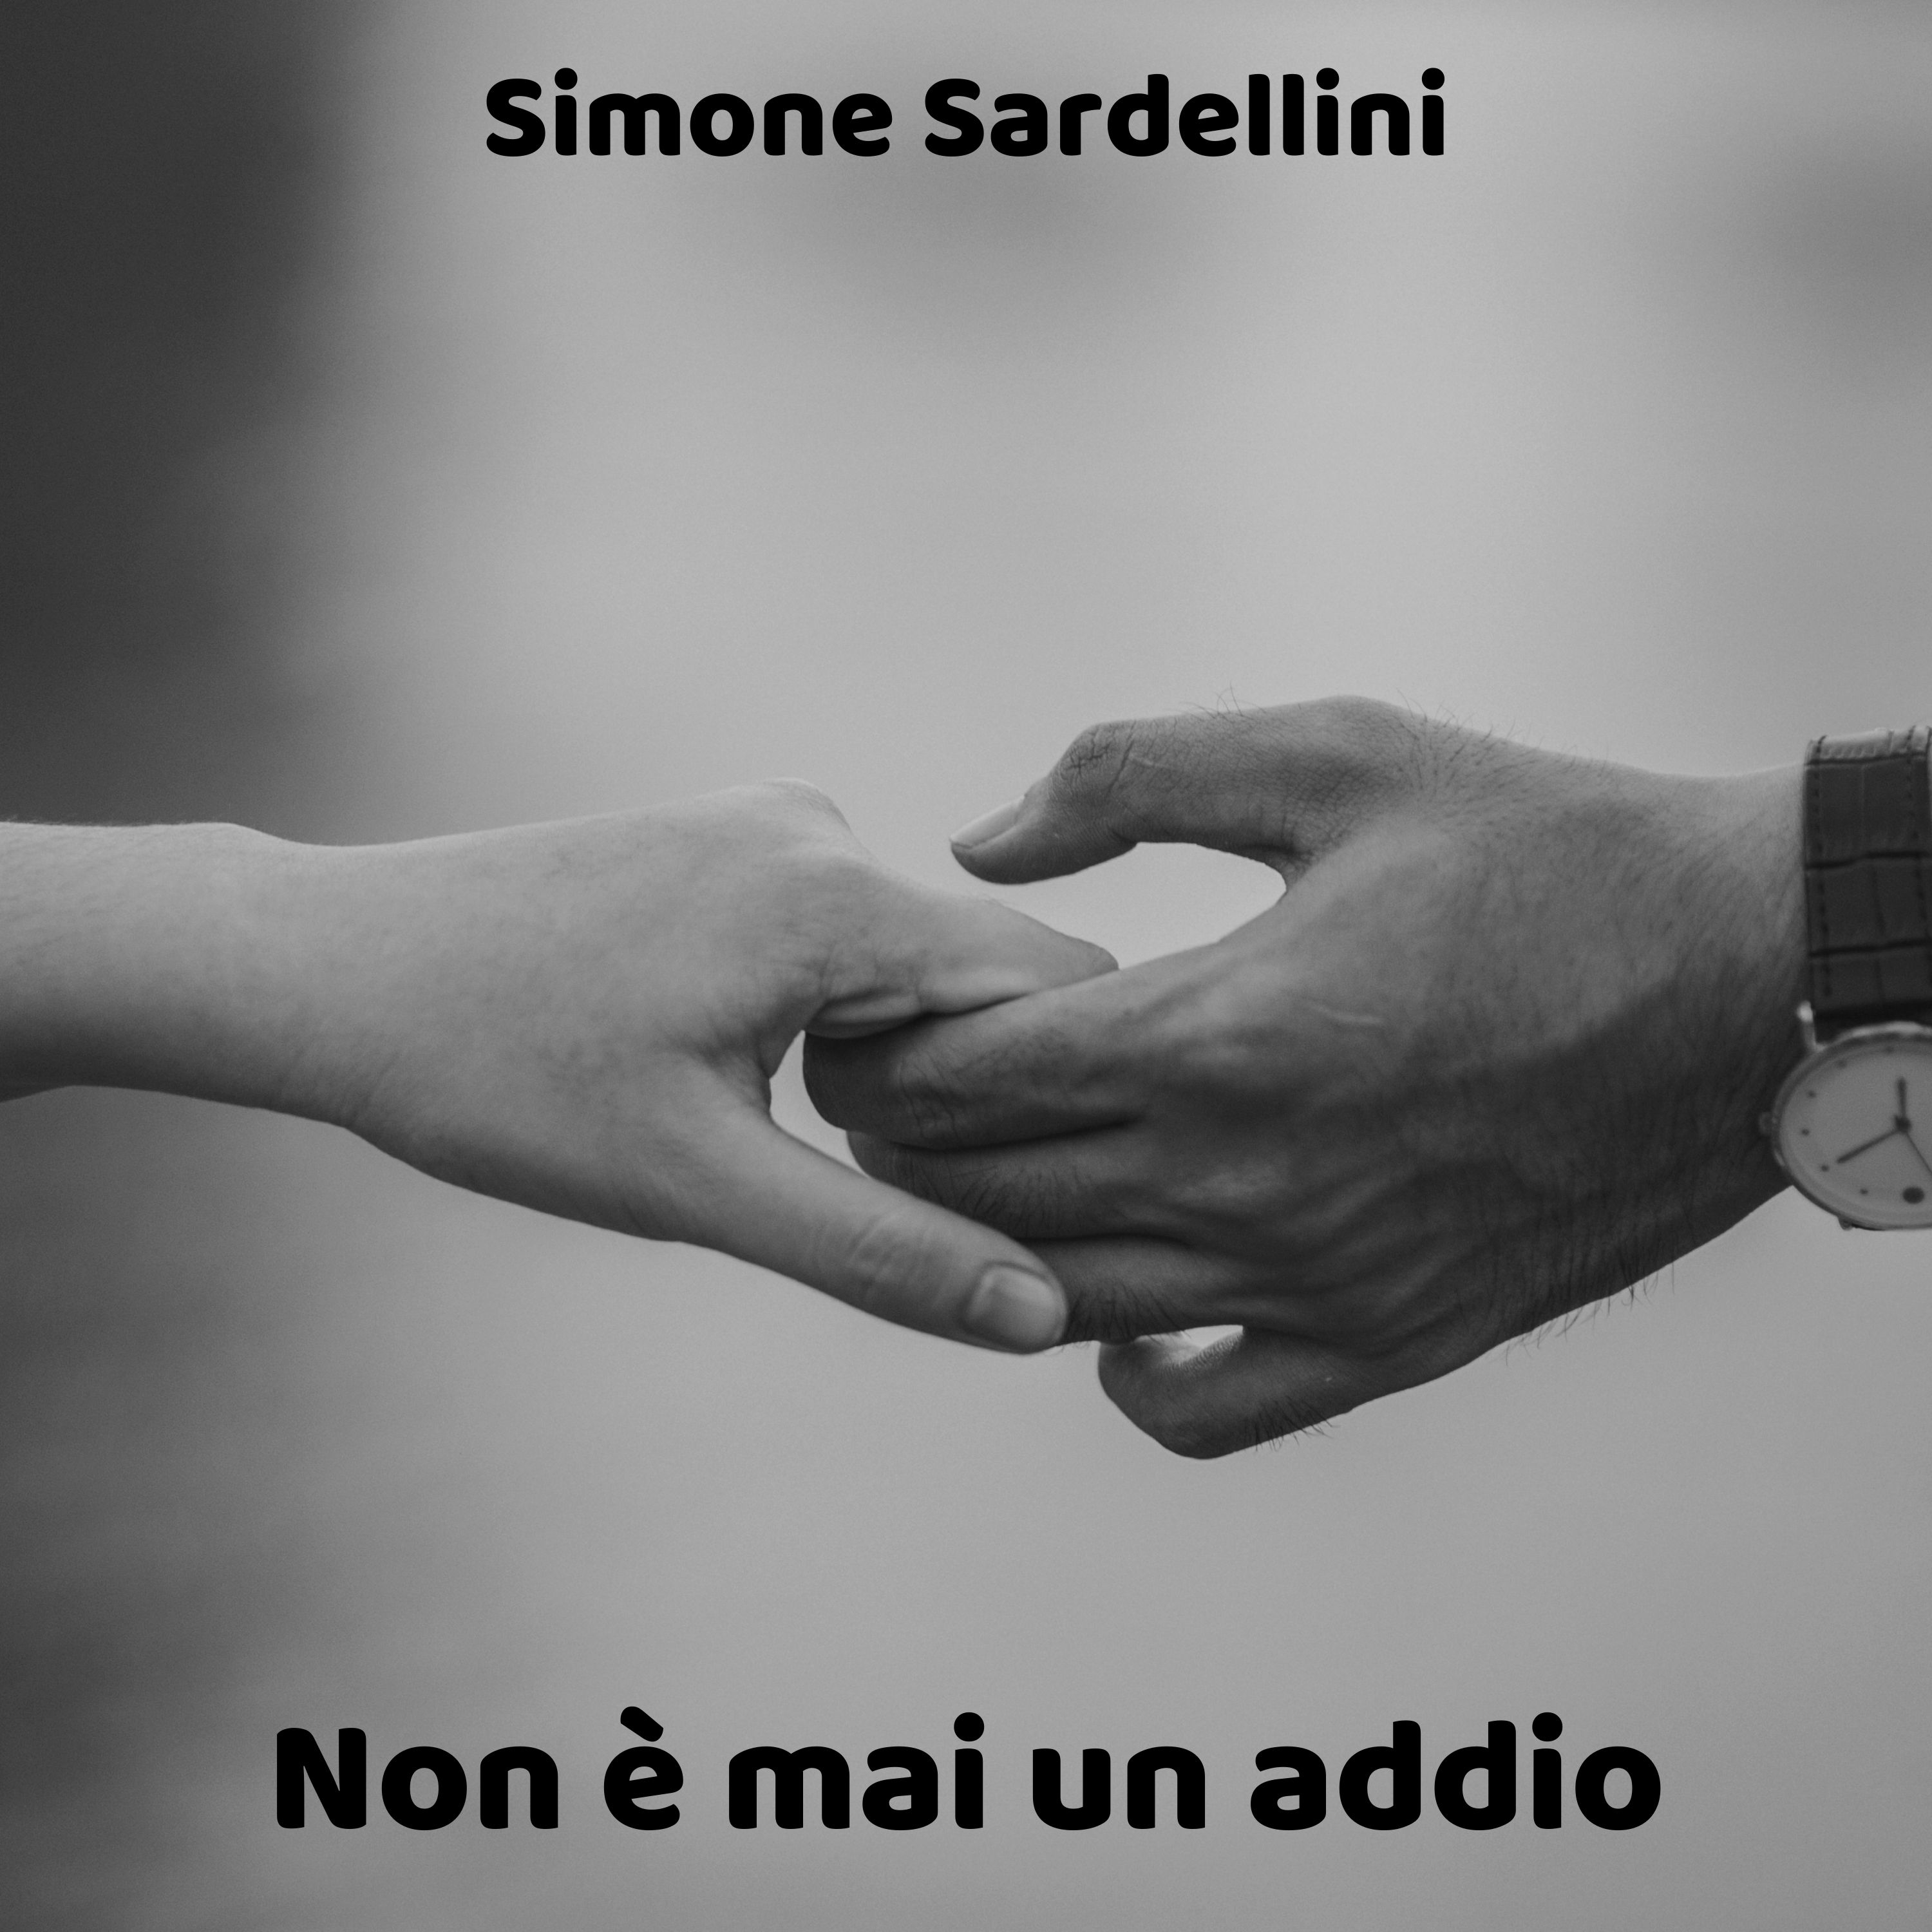 Nuovo brano strumentale per Simone Sardellini